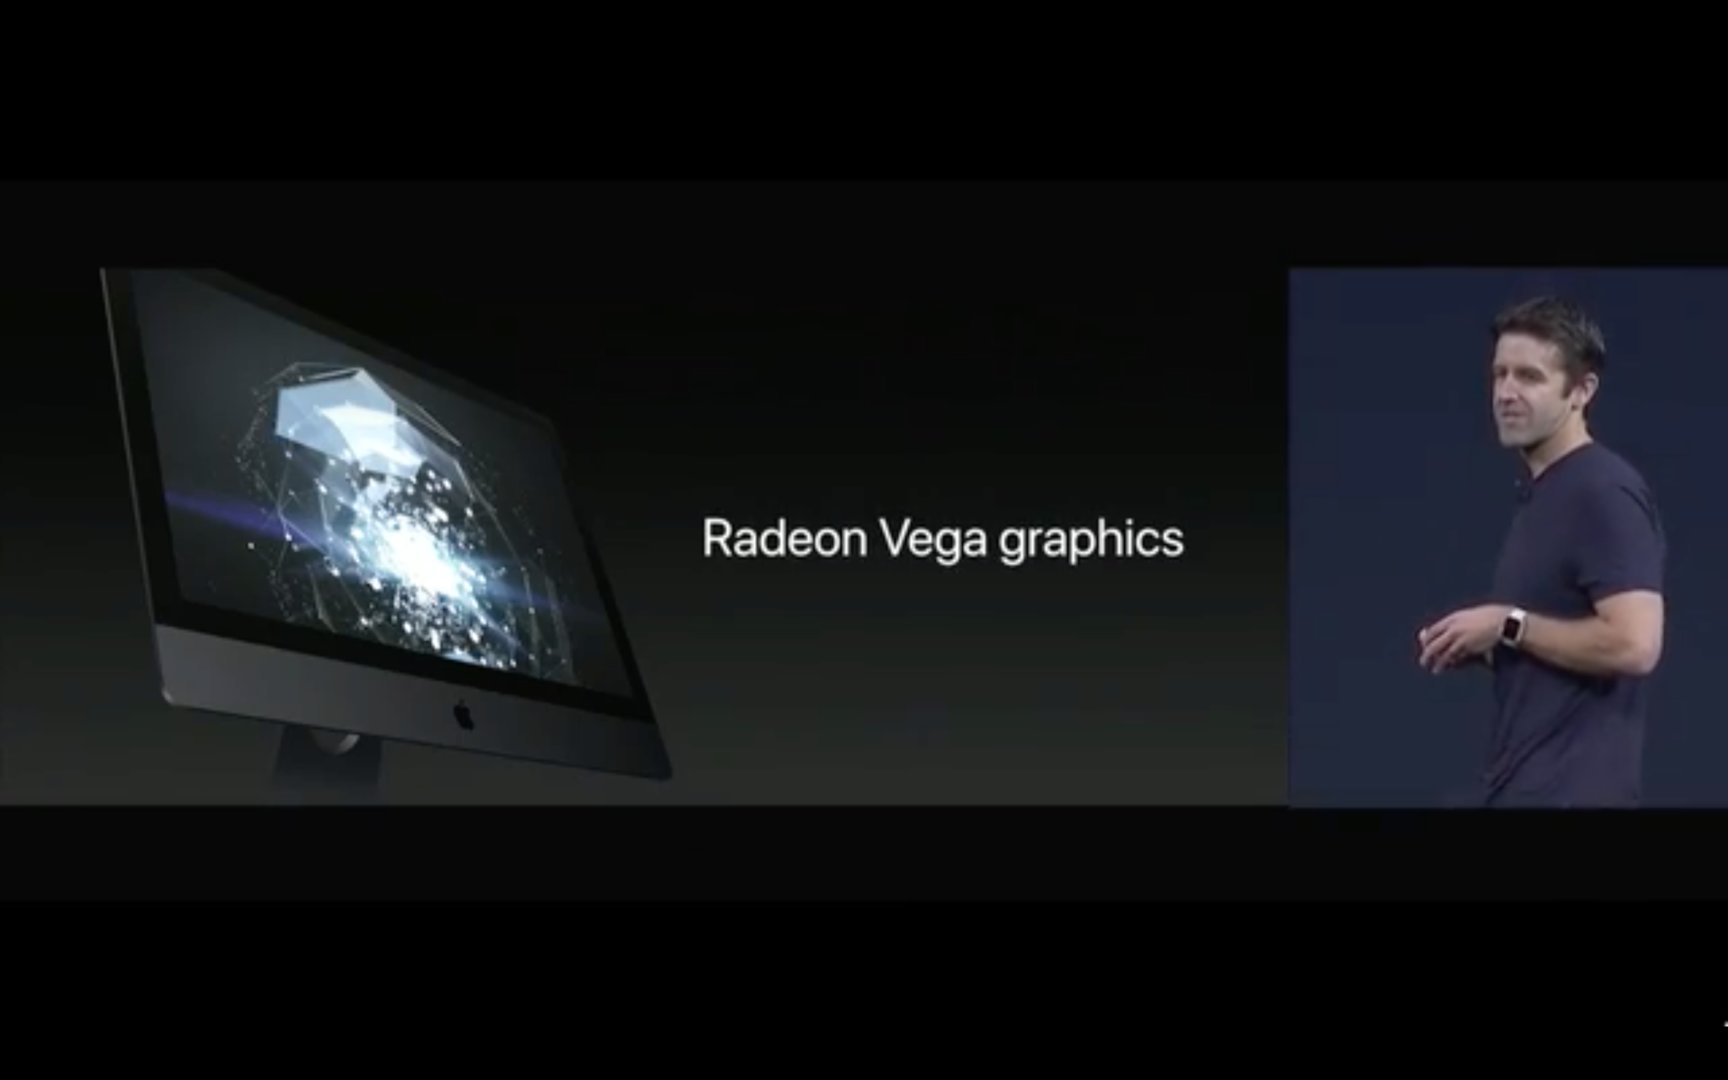 Grafikkarte vom Typ AMD Radeon Vega